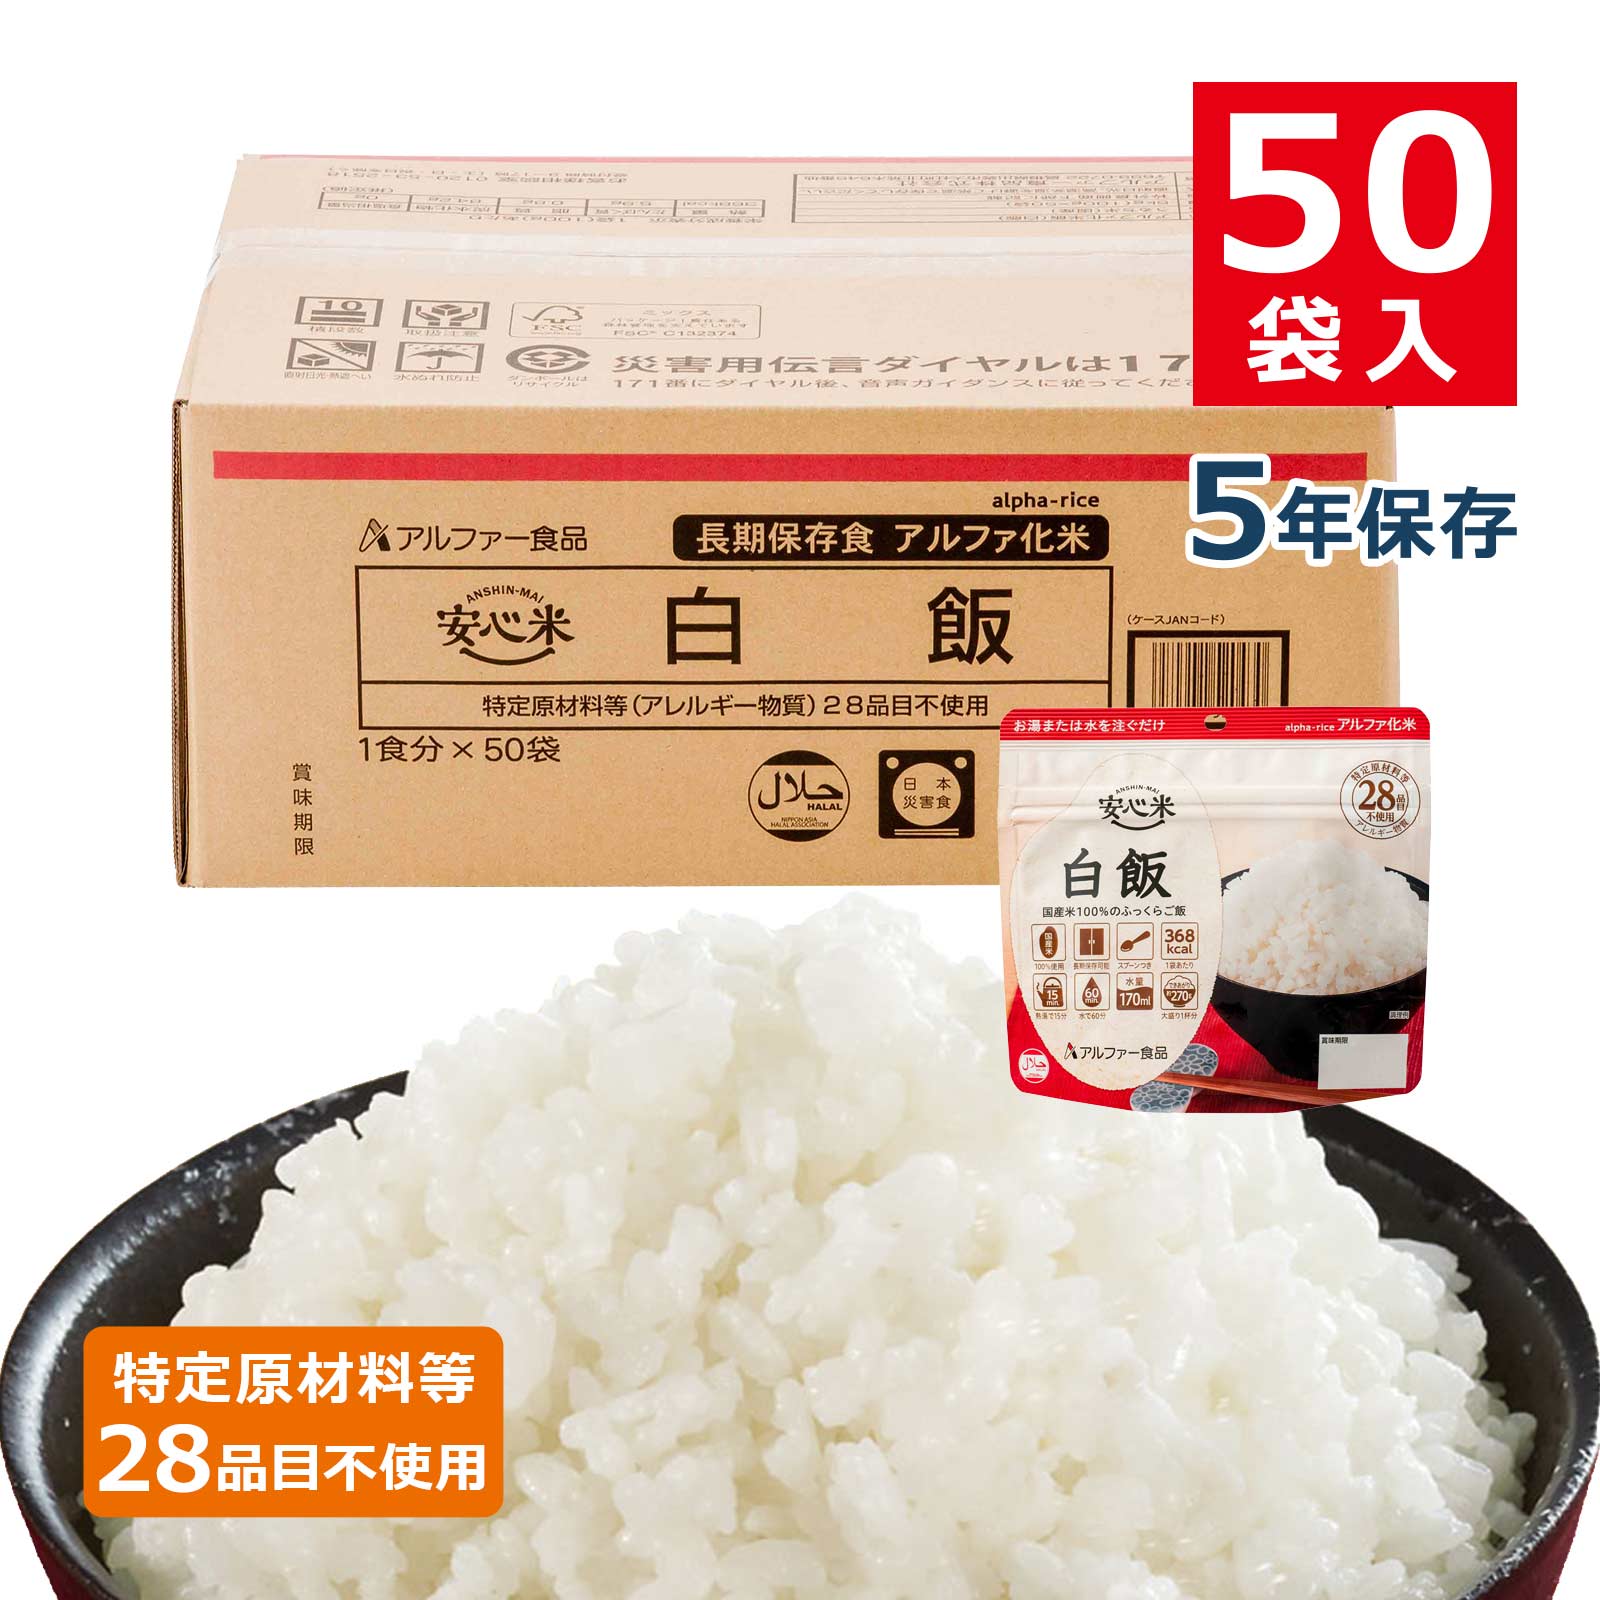 安心米アルファ化米個食白飯5年100g50袋入のイメージカット